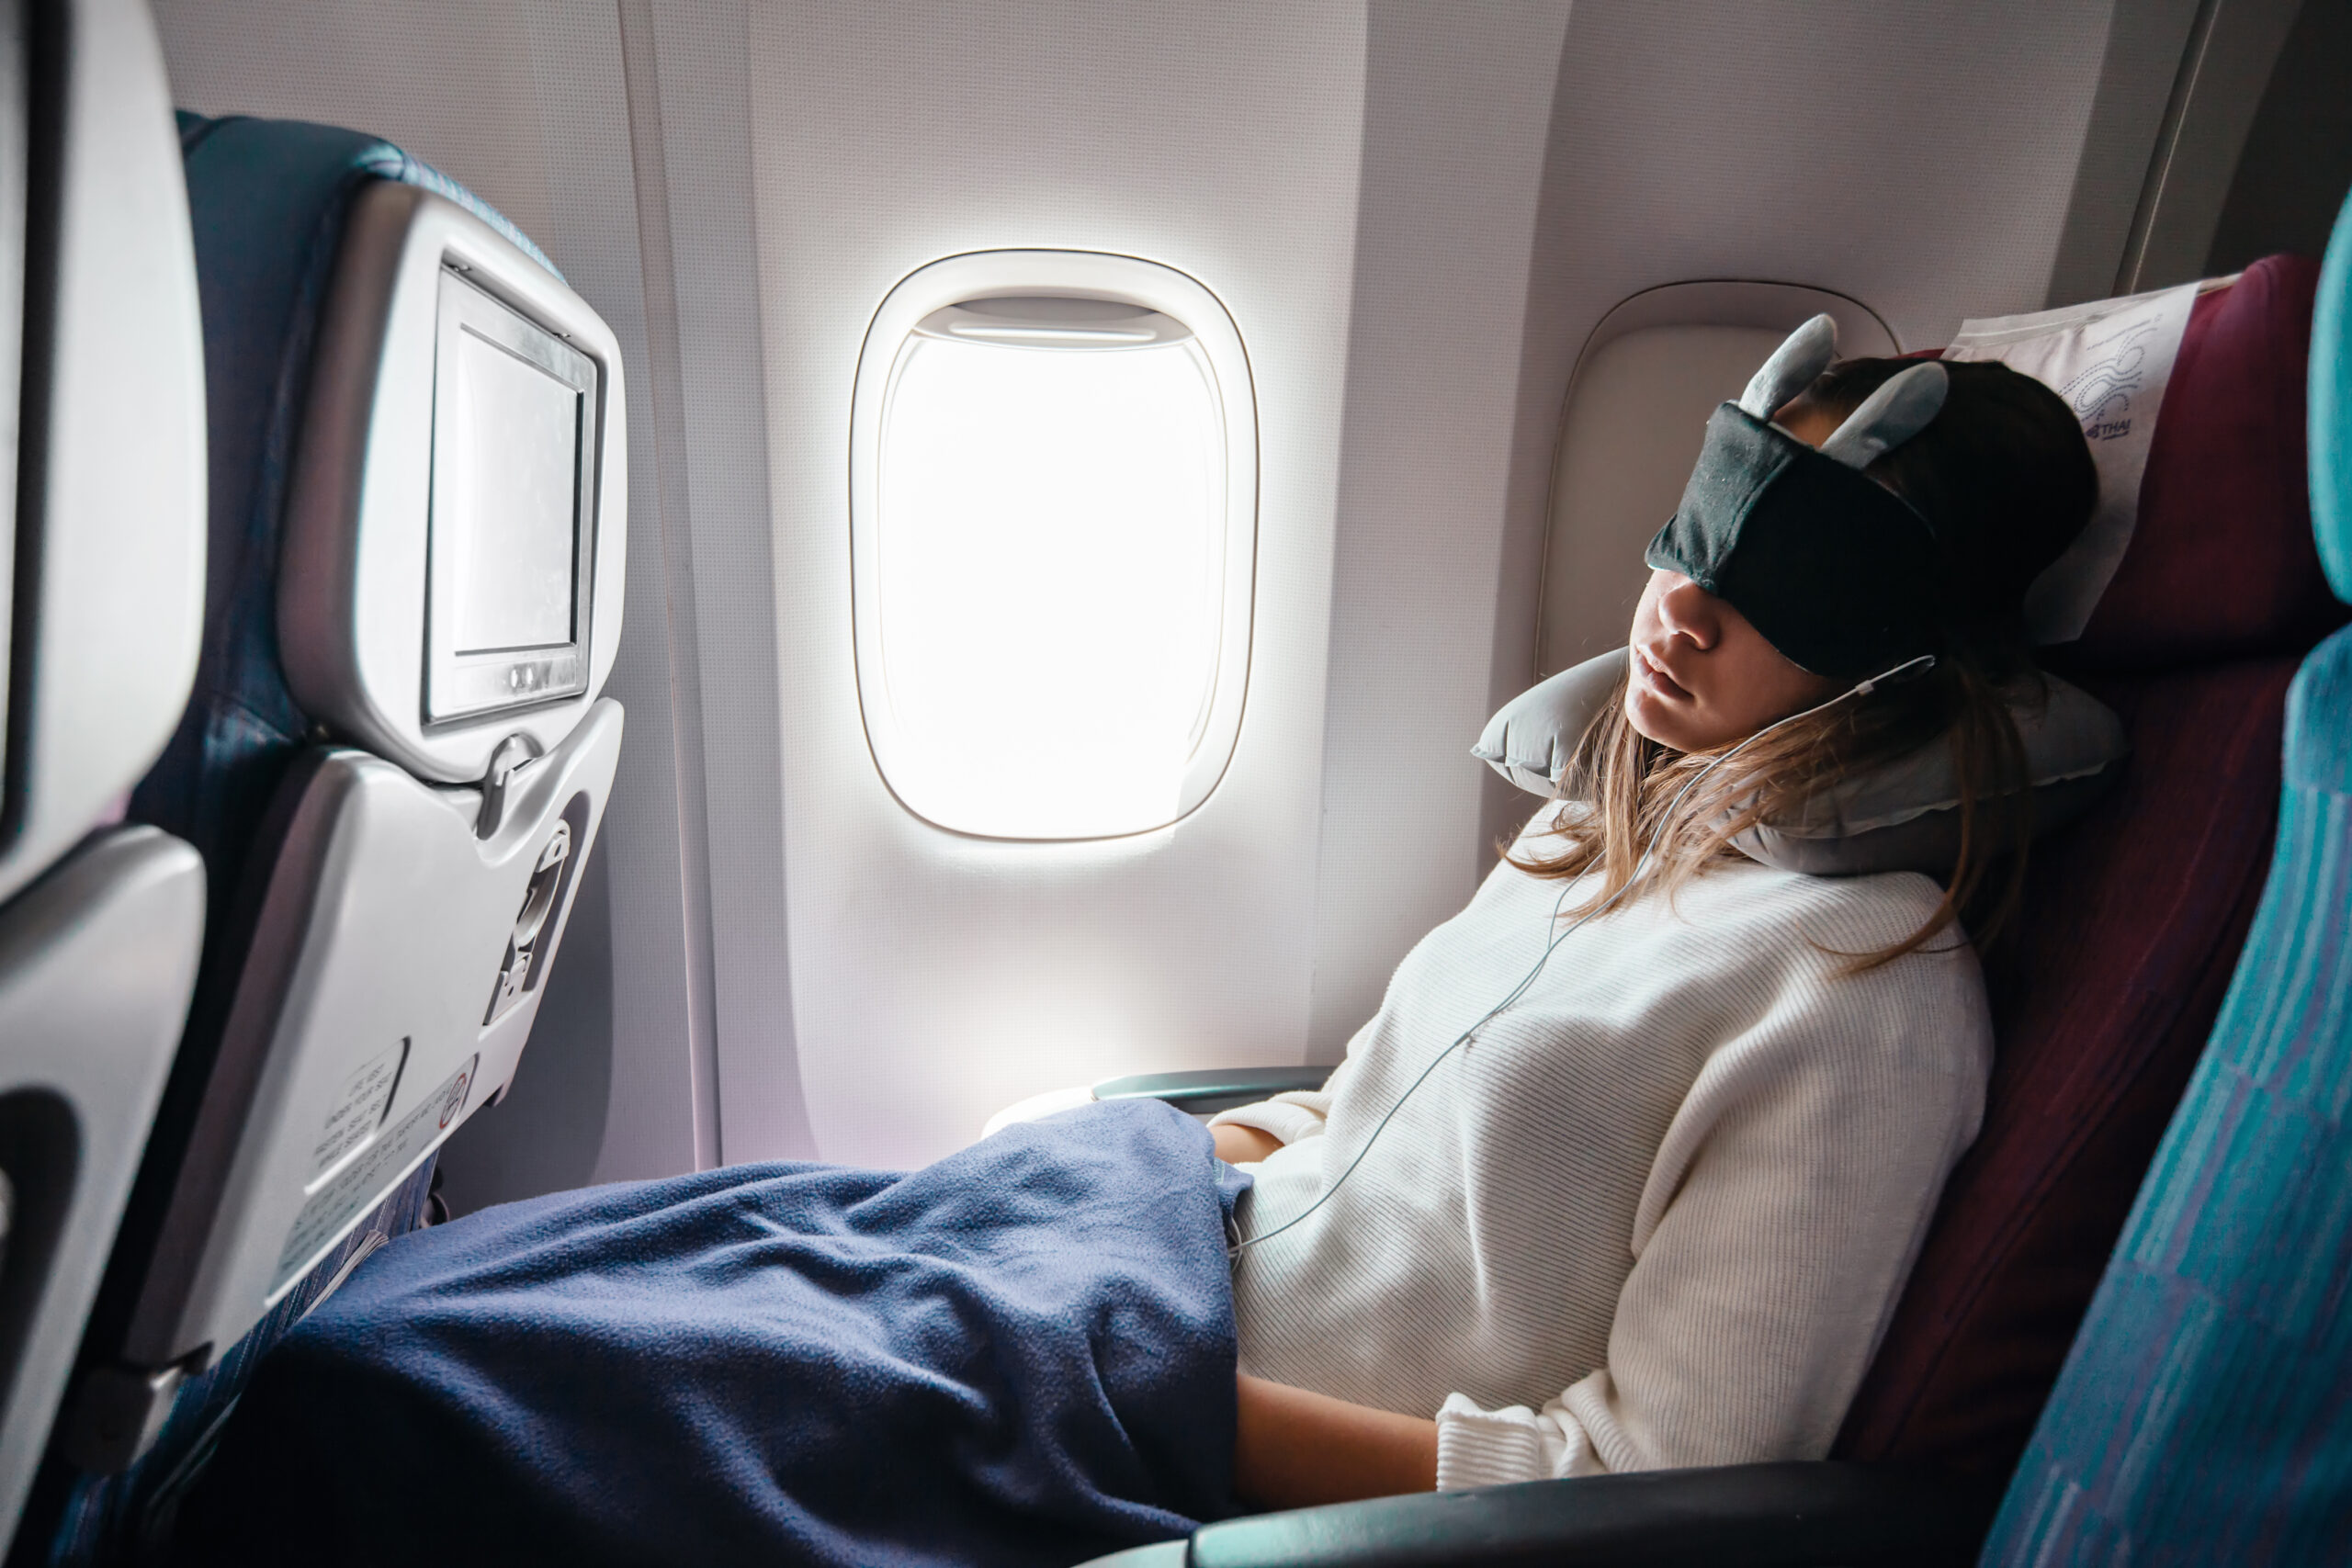 A woman sleeps on a flight